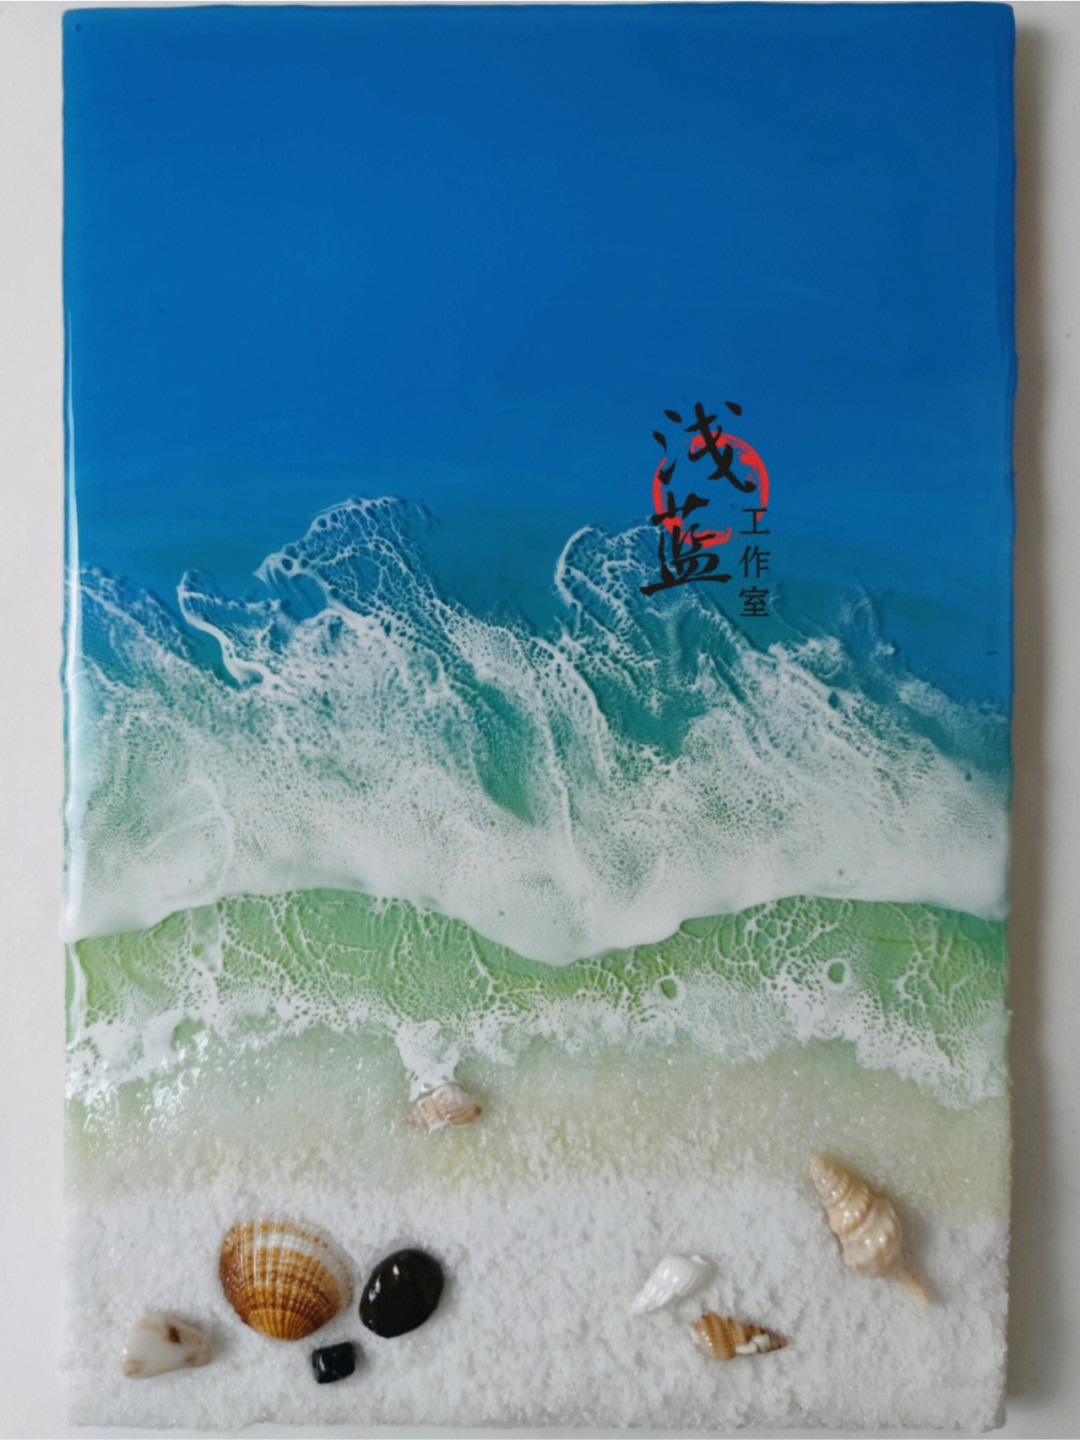 立体沙滩树脂海浪壁画手工作品贝壳海螺石头